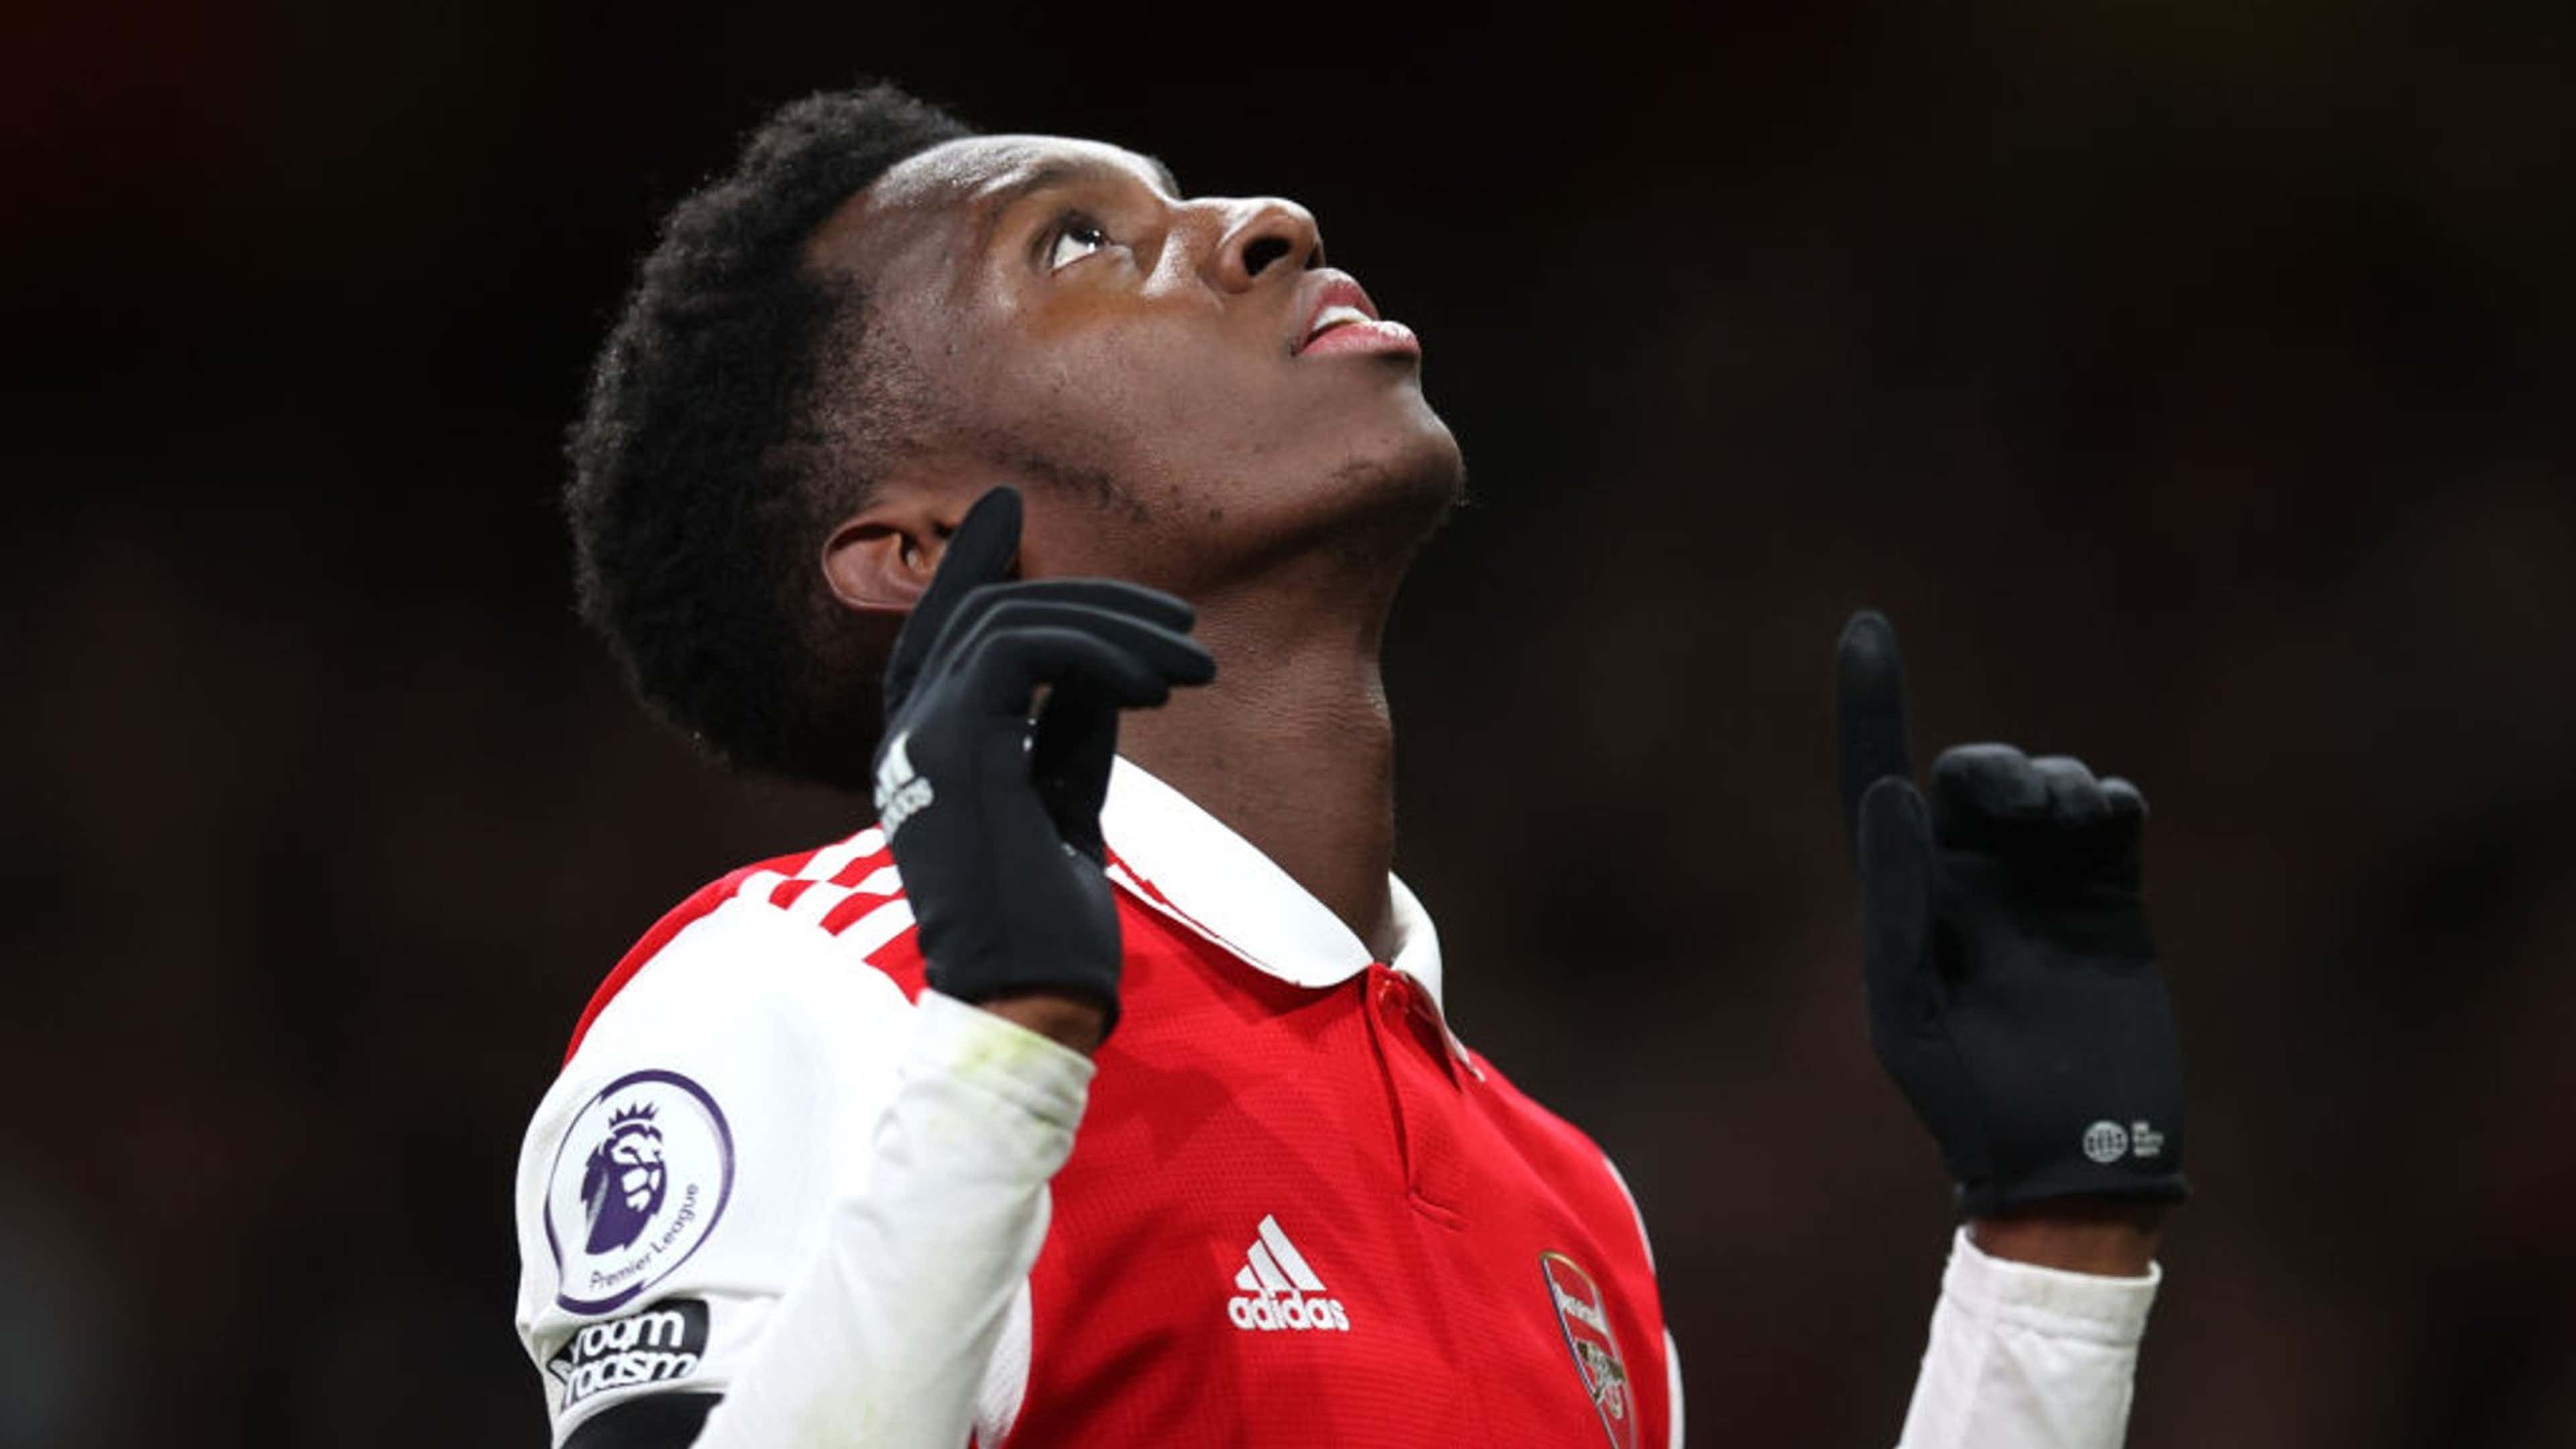 Why Eddie Nketiah is Worthy of Arsenal's Number 14 shirt